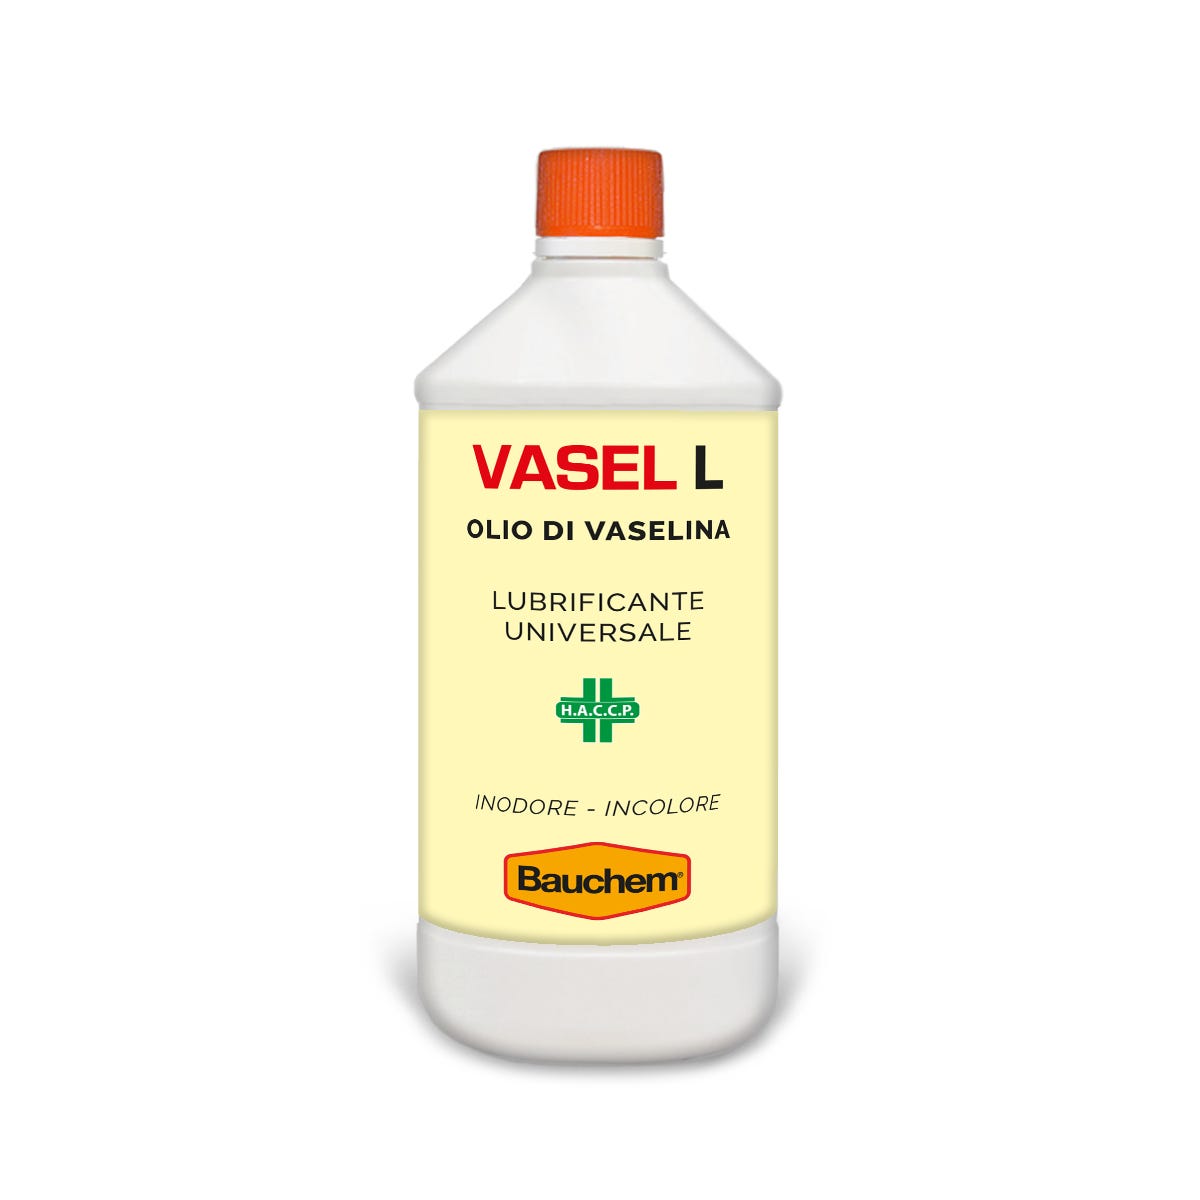 BAUCHEM Vasel L Olio di Vaselina Lubrificante Universale Inodore e Incolore  1 L